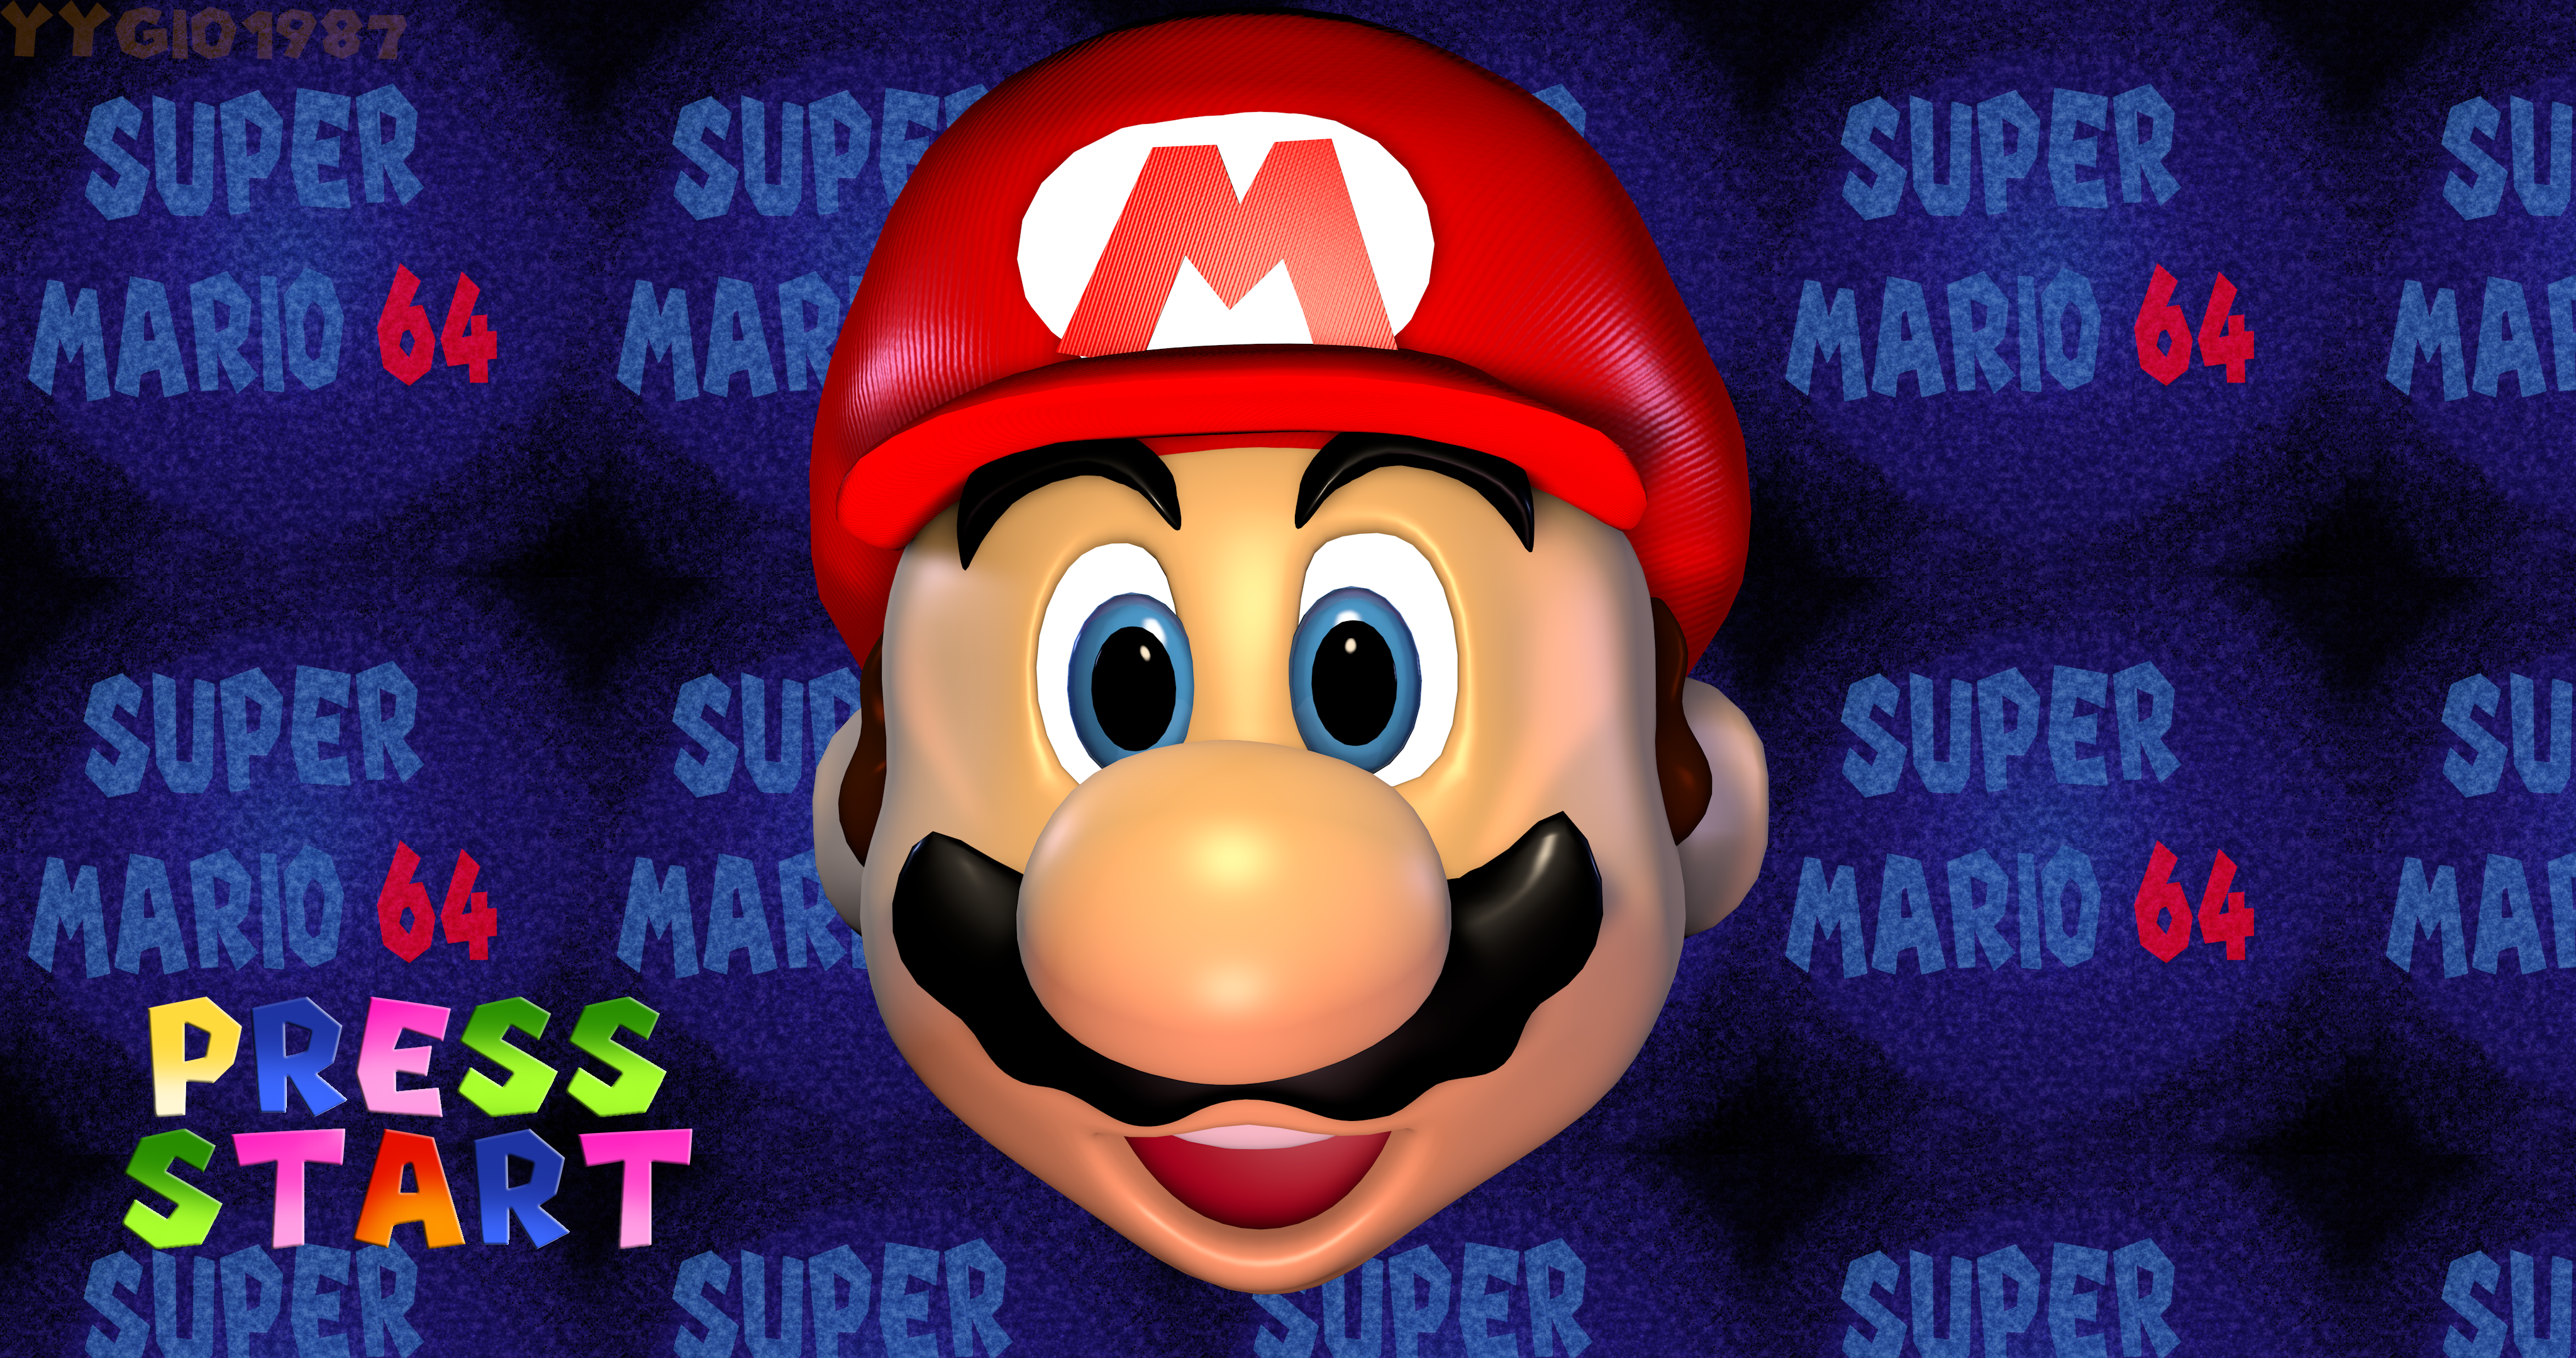 Super mario песня. Super Mario 64 Luigi. Марио 64 ps1. Super Mario 64 Mario Luigi. Super Mario 64 Wario.